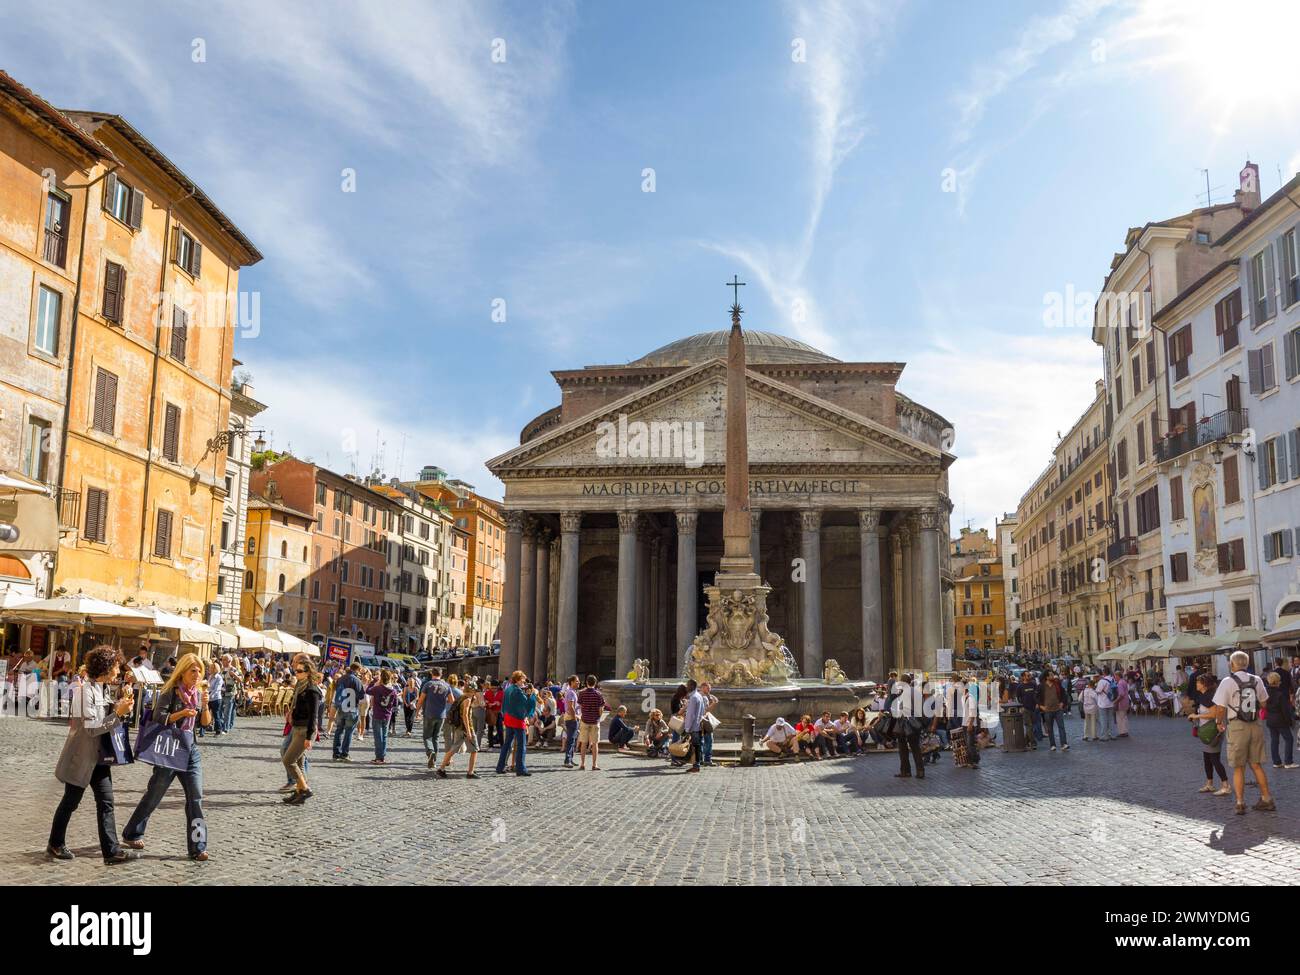 Italy, Lazio, Rome, UNESCO World Heritage Site, Pantheon, Piazza della Rotonda Stock Photo